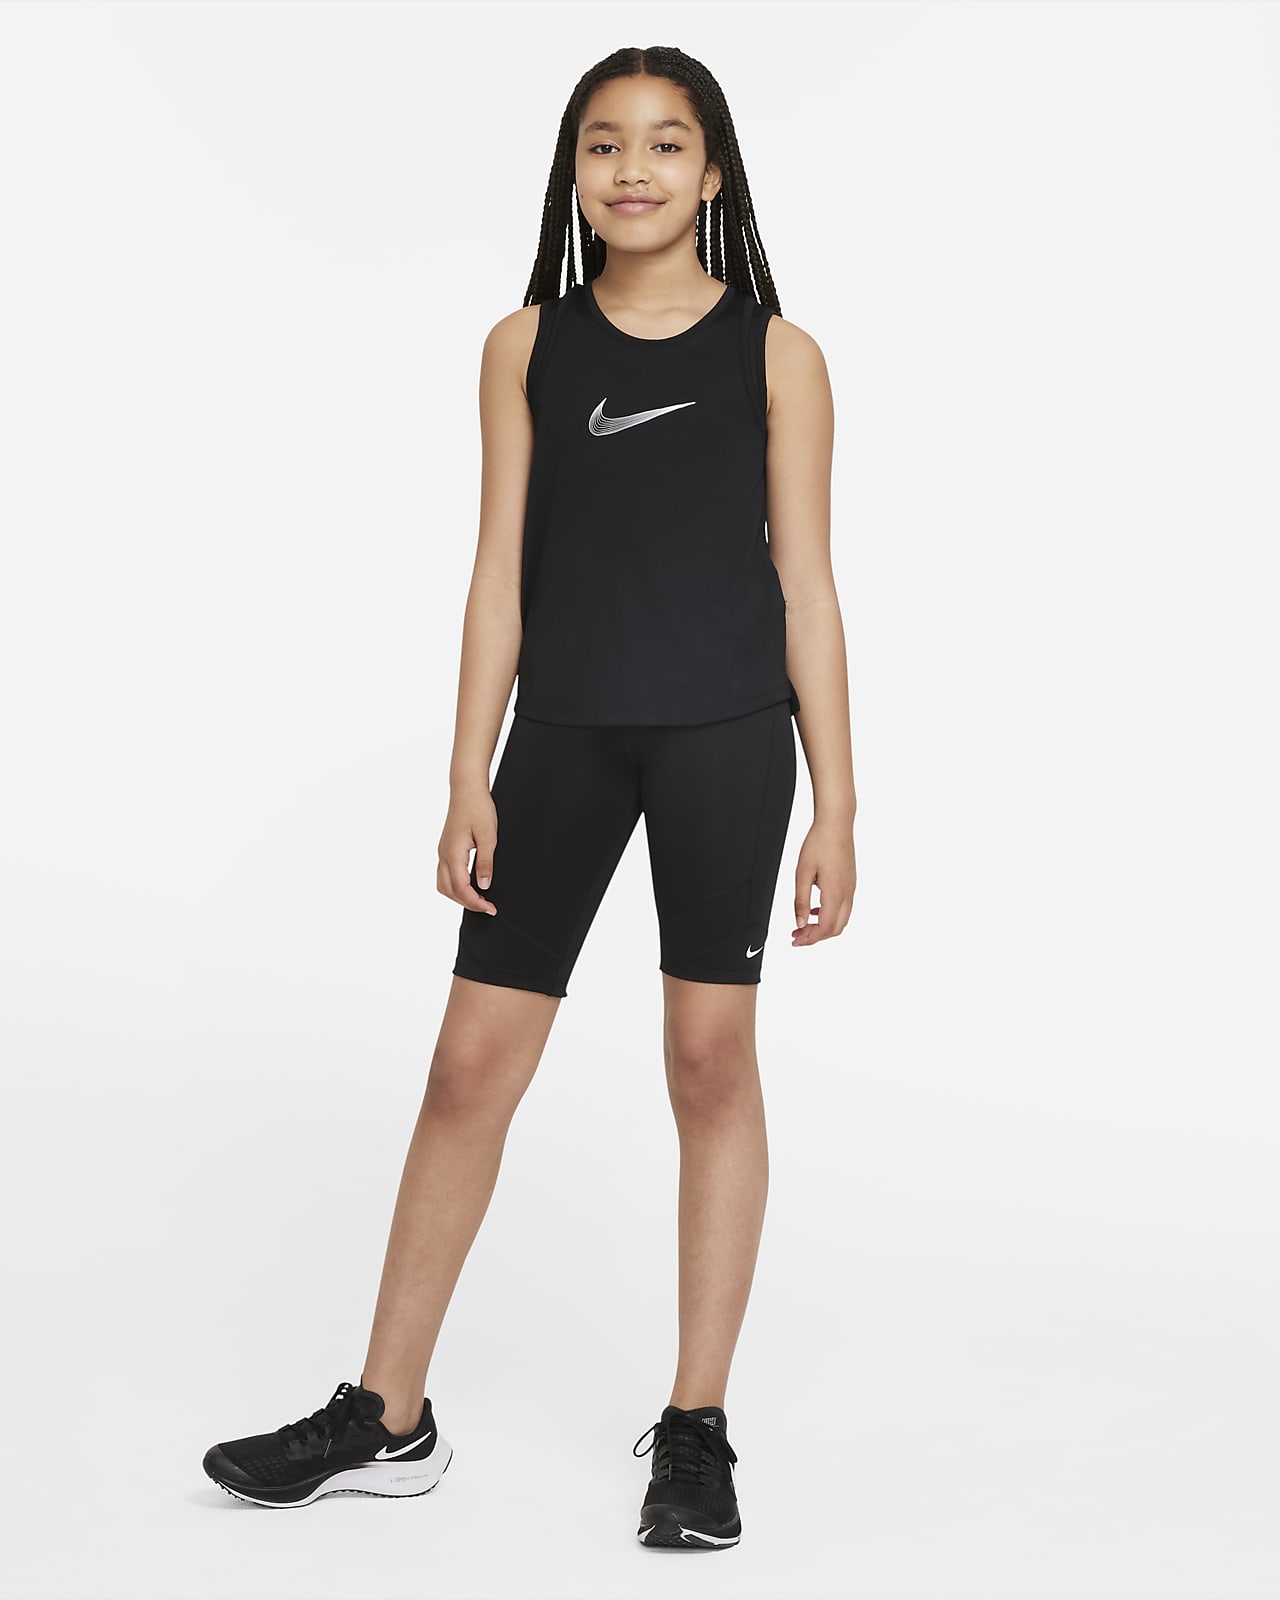 Kids\' Dri-FIT One Bike Nike Shorts. Big (Girls\')